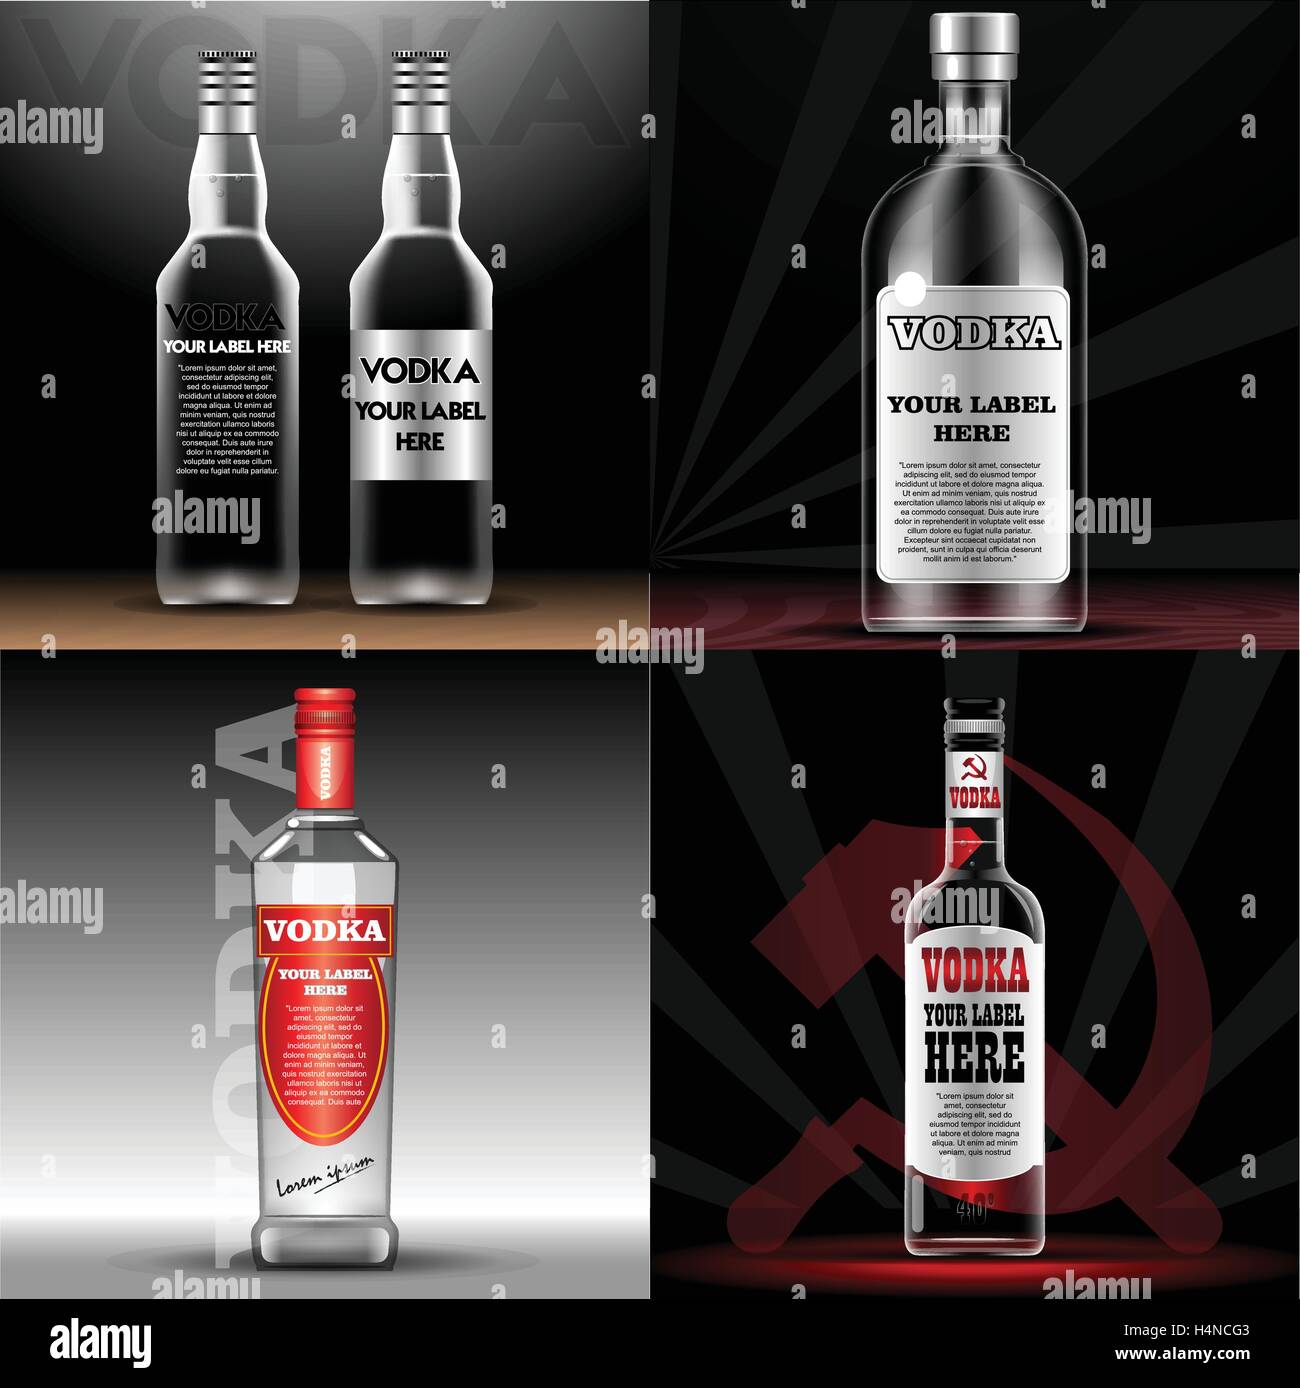 Vektor-rot und transparent Vodka Flasche Mock-up mit Ihrem Label hier Text.  Silberne Flasche mit Verschluss über schwarzen Hintergrund  Stock-Vektorgrafik - Alamy